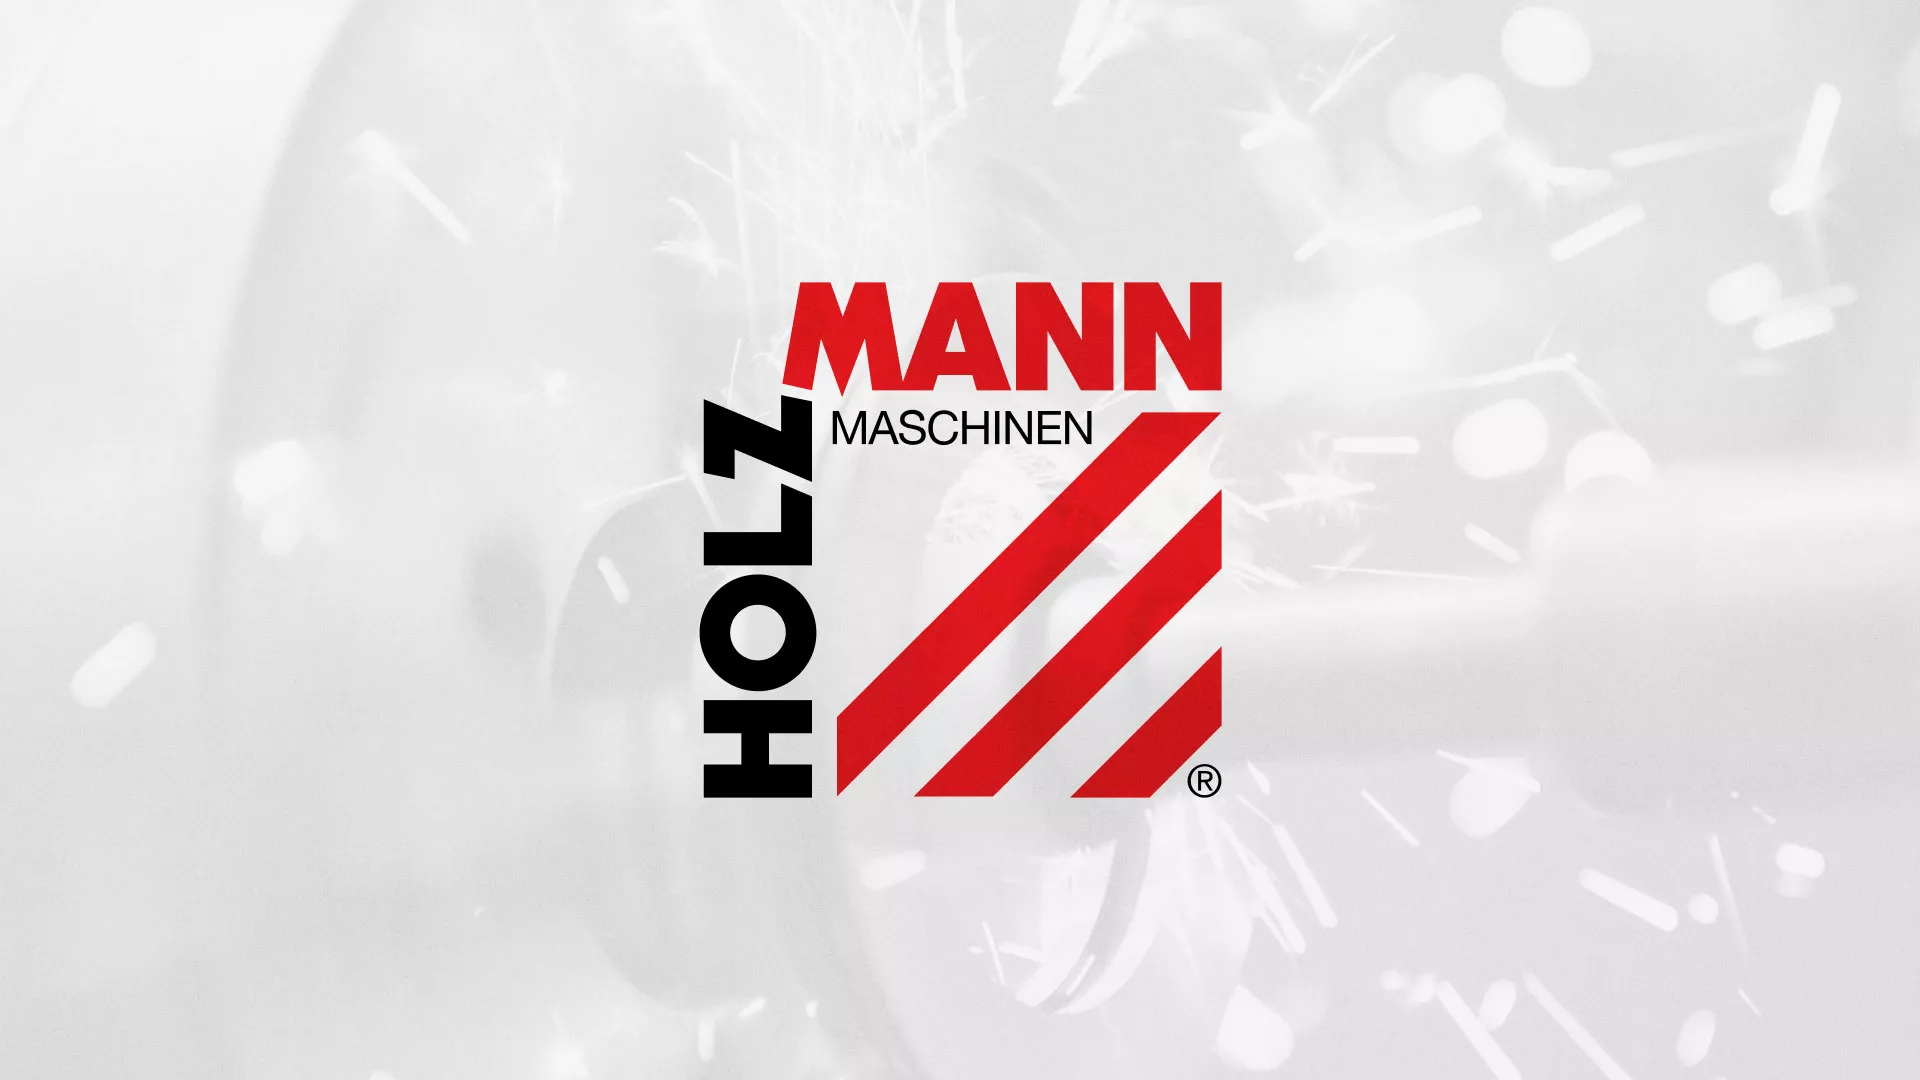 Создание сайта компании «HOLZMANN Maschinen GmbH» в Большом Камне